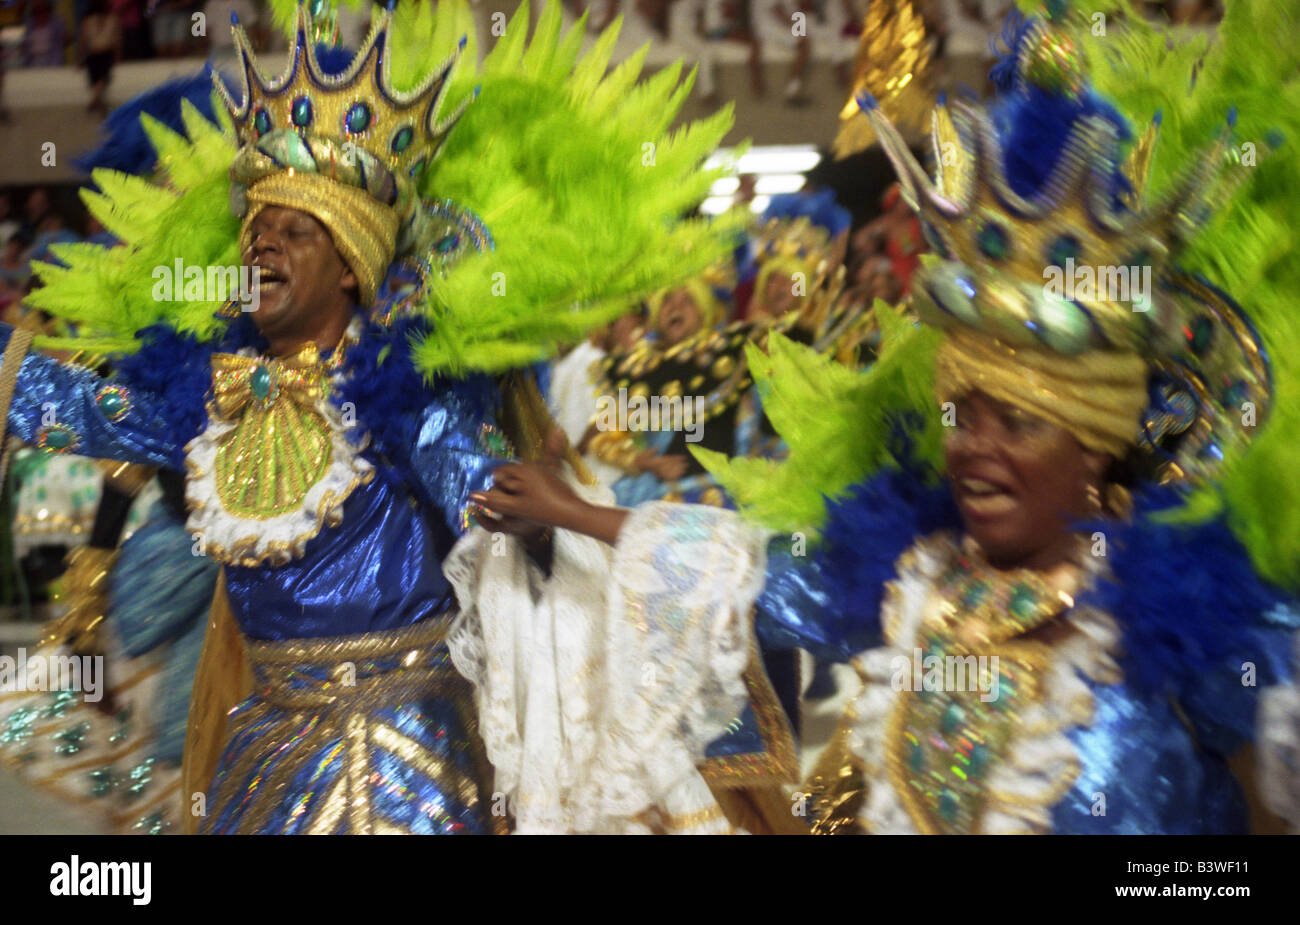 Rio de Janeiro, Brazil. Carnaval in the SambÛdromo. Stock Photo